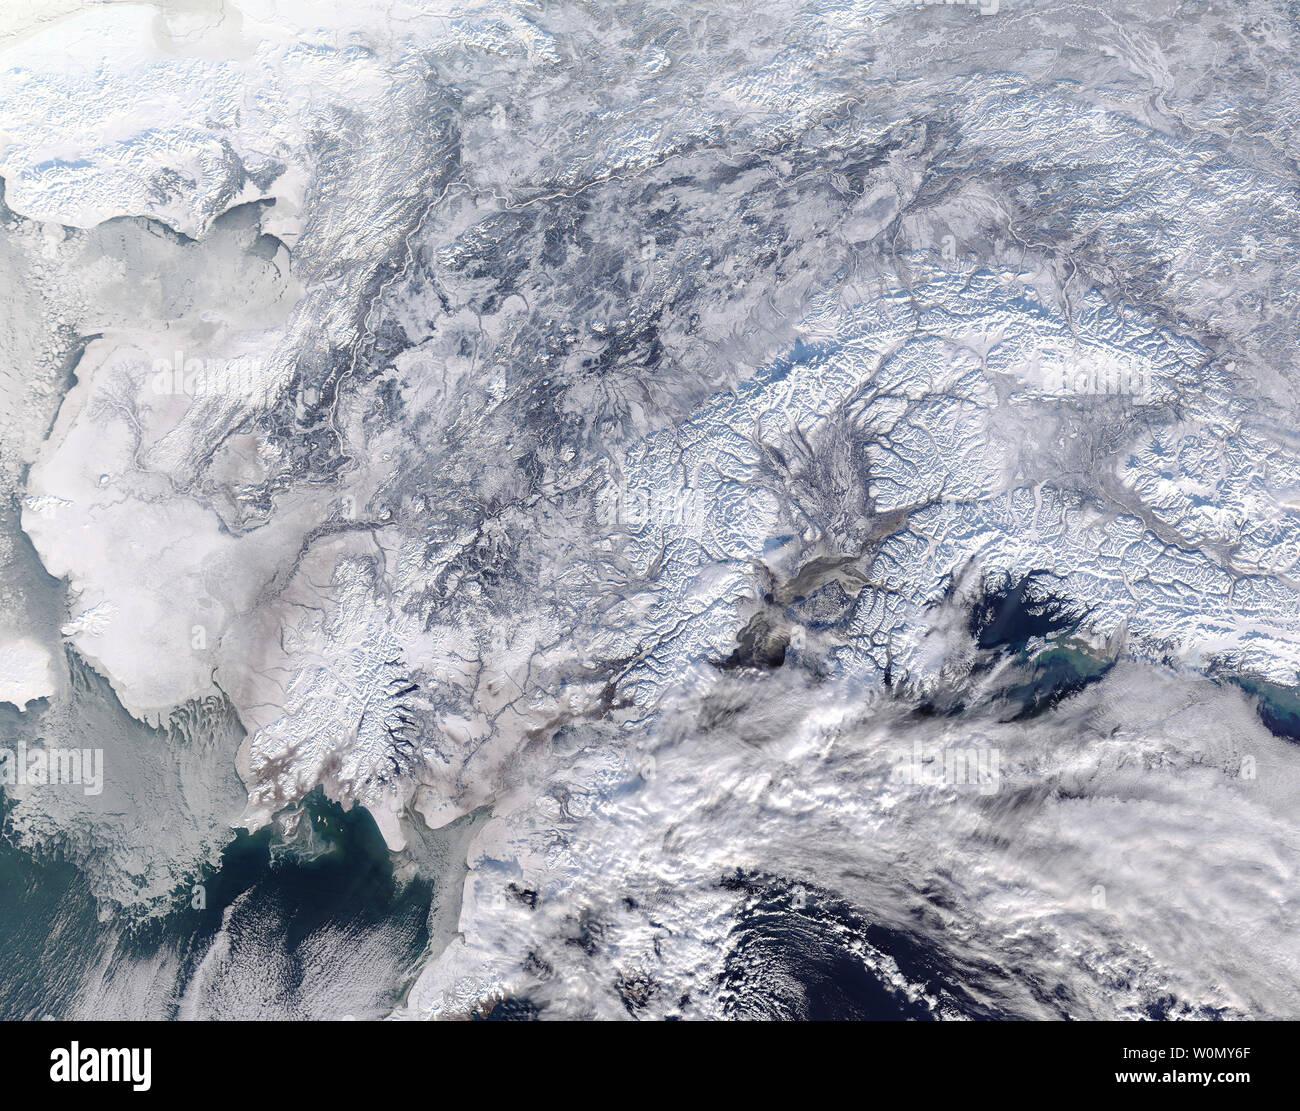 Alaska war in der vollen Griff der Winter am 31. Januar 2018, wenn die NASA-Satelliten Terra bestanden Overhead. Die Moderate Resolution Imaging Spectroradiometer (MODIS) Fliegen an Bord erworben. true-color Bild von einem Teil der südlichen Alaska am selben Tag und zeigt eine Szene gut im Winter weiß bedeckt.. Schnee bedeckt das Land von Nome, der in der Nähe der westlichen Grenze des Bildes sitzt, an der Grenze zu Kanada im Osten. Meereis klammert sich an die Küste im Westen, schwebend über die Gewässer von Bristol Bay. Heavy cloud Bögen über den Golf von Alaska im Südosten, wahrscheinlich zusätzlich bringen. Stockfoto